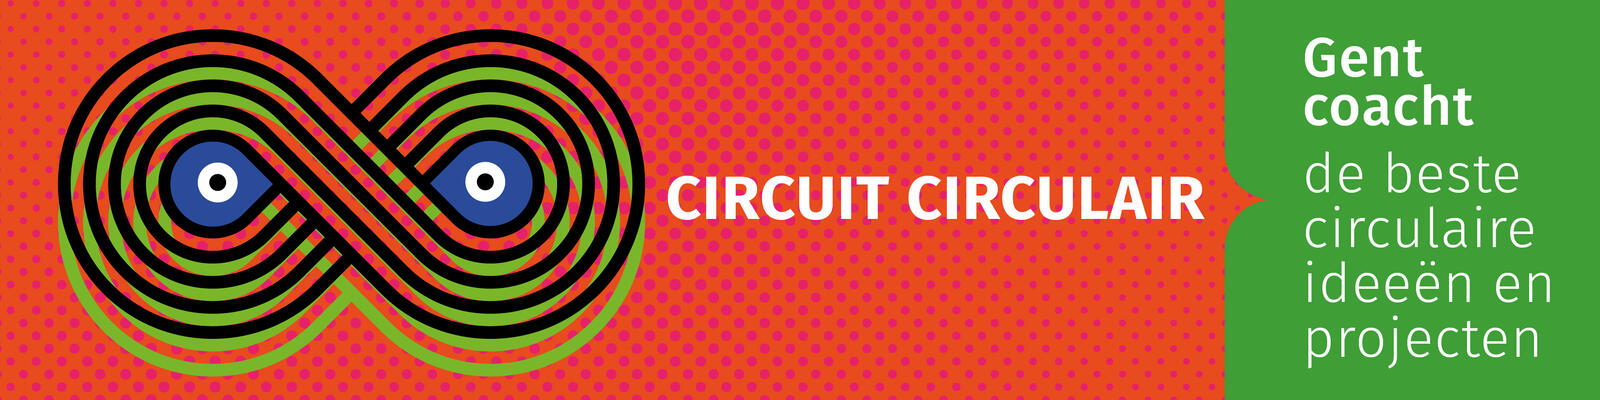 Circuit circulair banner